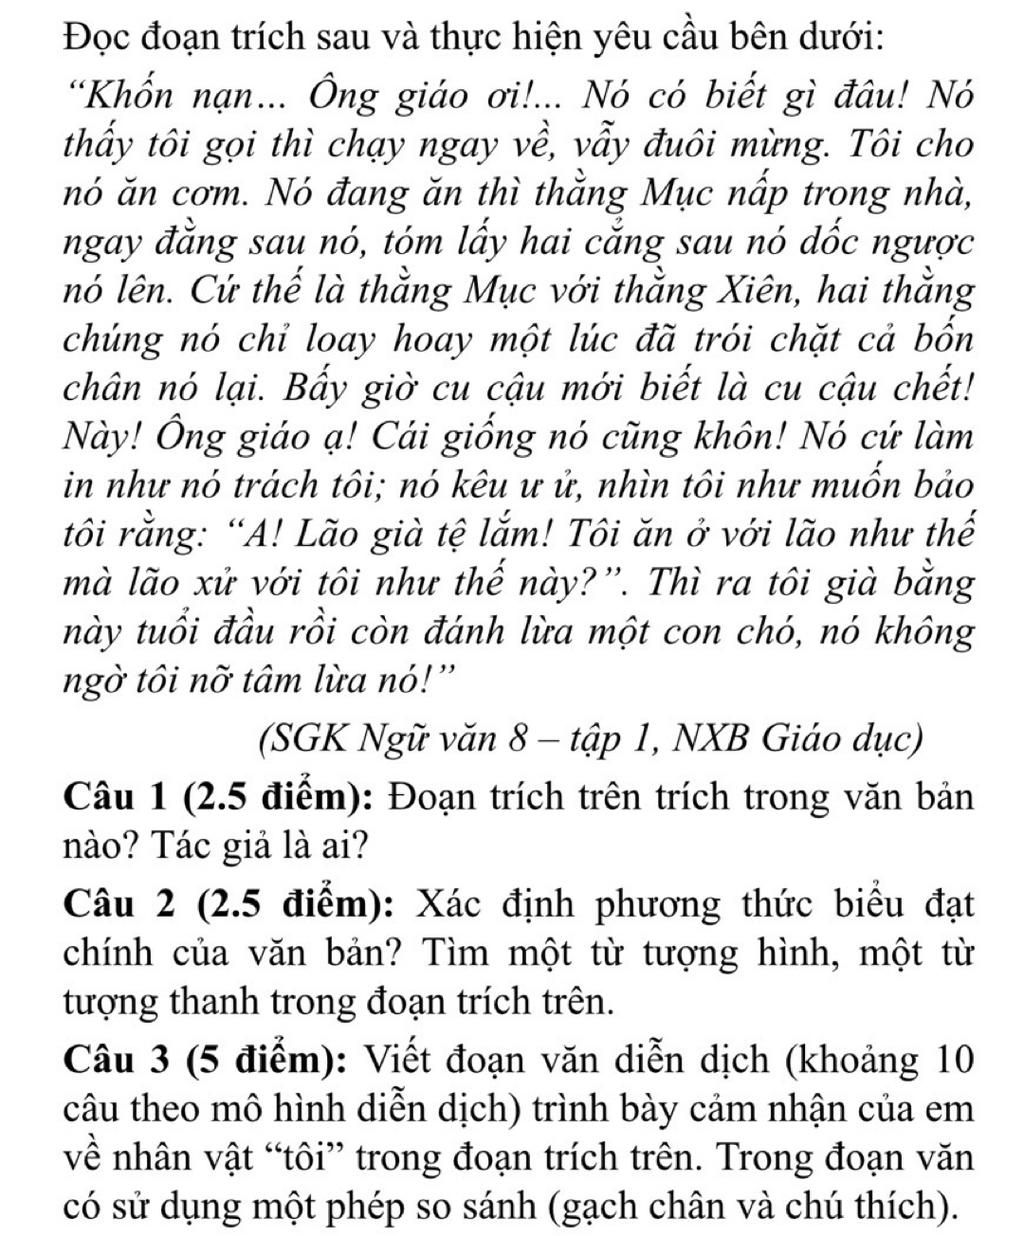 B1 viết 1 đoạn văn khoảng 10 câu theo cách diễn dịch hoặc quy nạp nêu cảm  nhận của em về nhân vật lão hạc trong chuyện  Olm